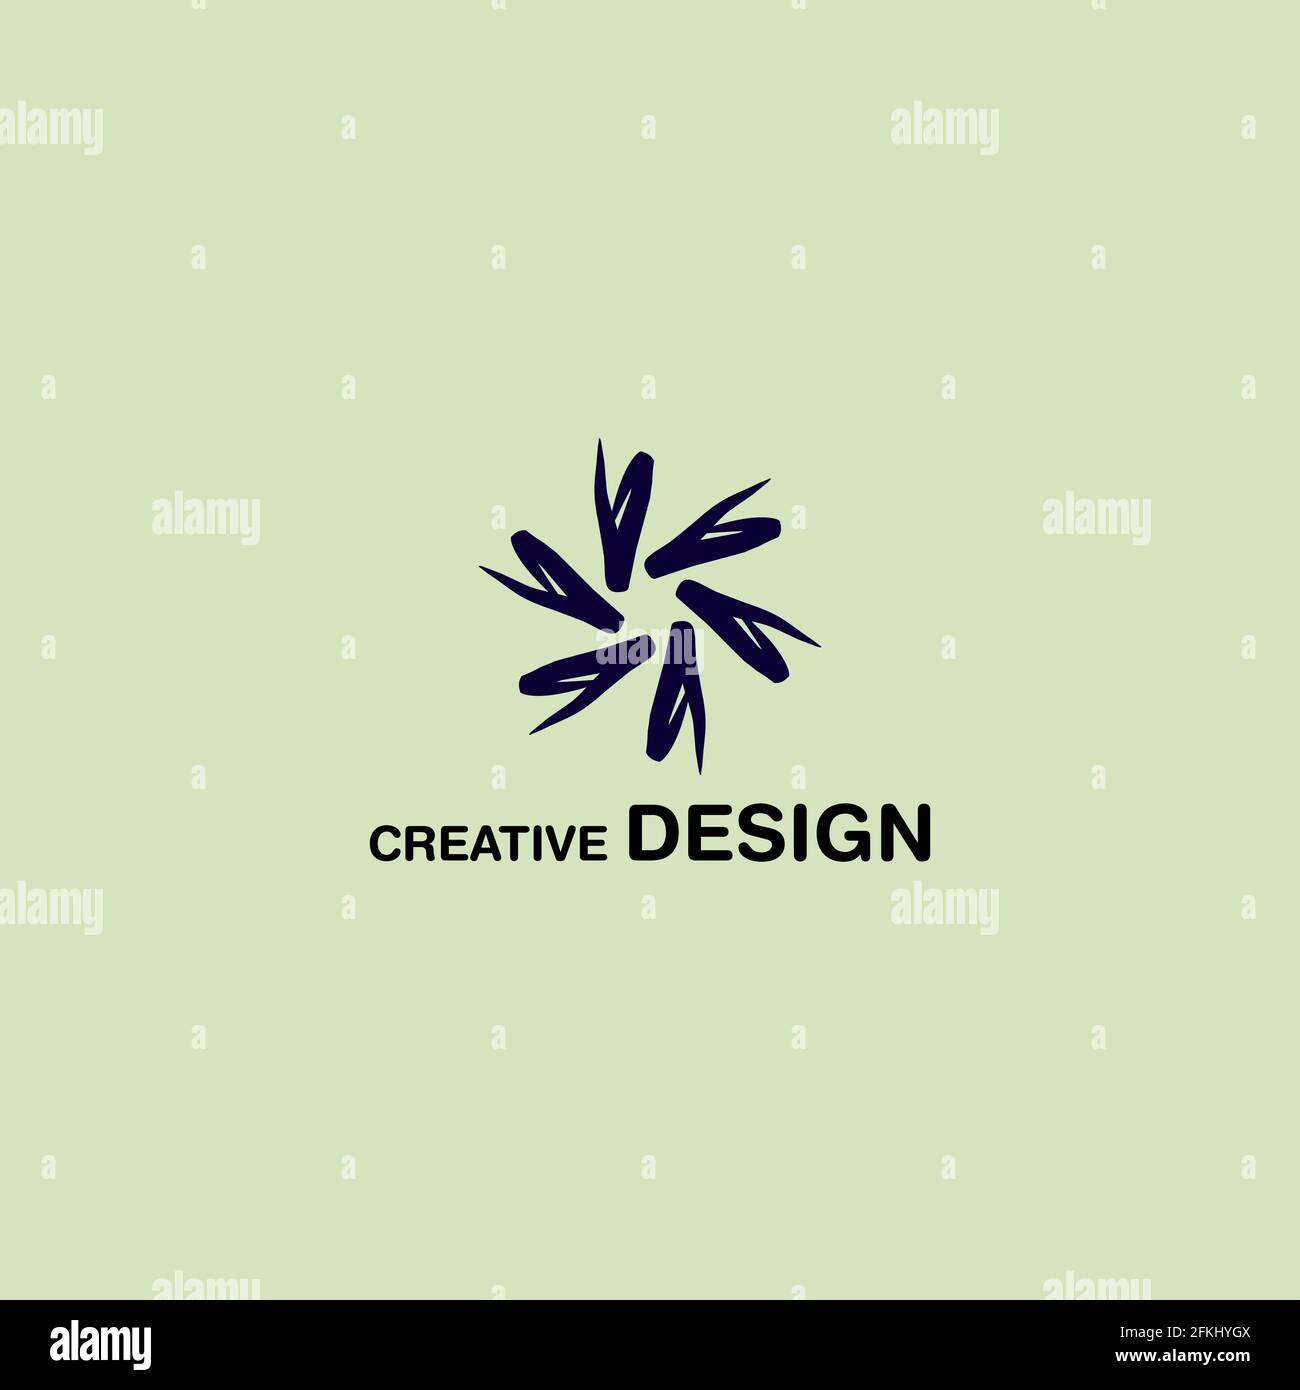 Clean Abstract Creative Logo Vector Design eps10 Stock Vector